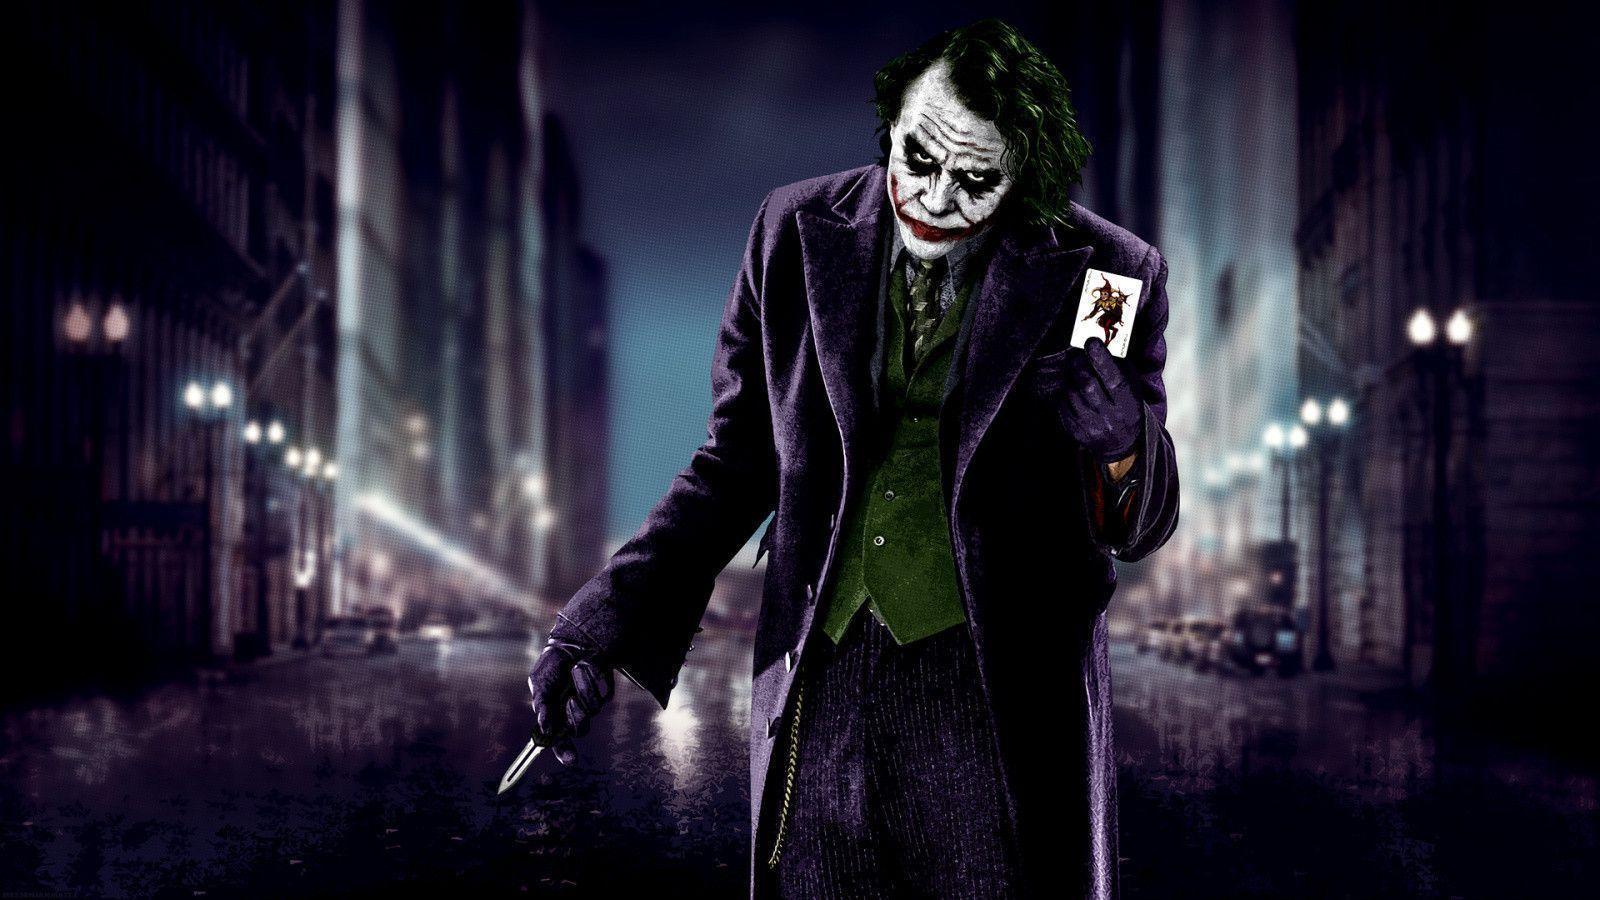 Dark Knight Joker Face Wallpaper Free Dark Knight Joker